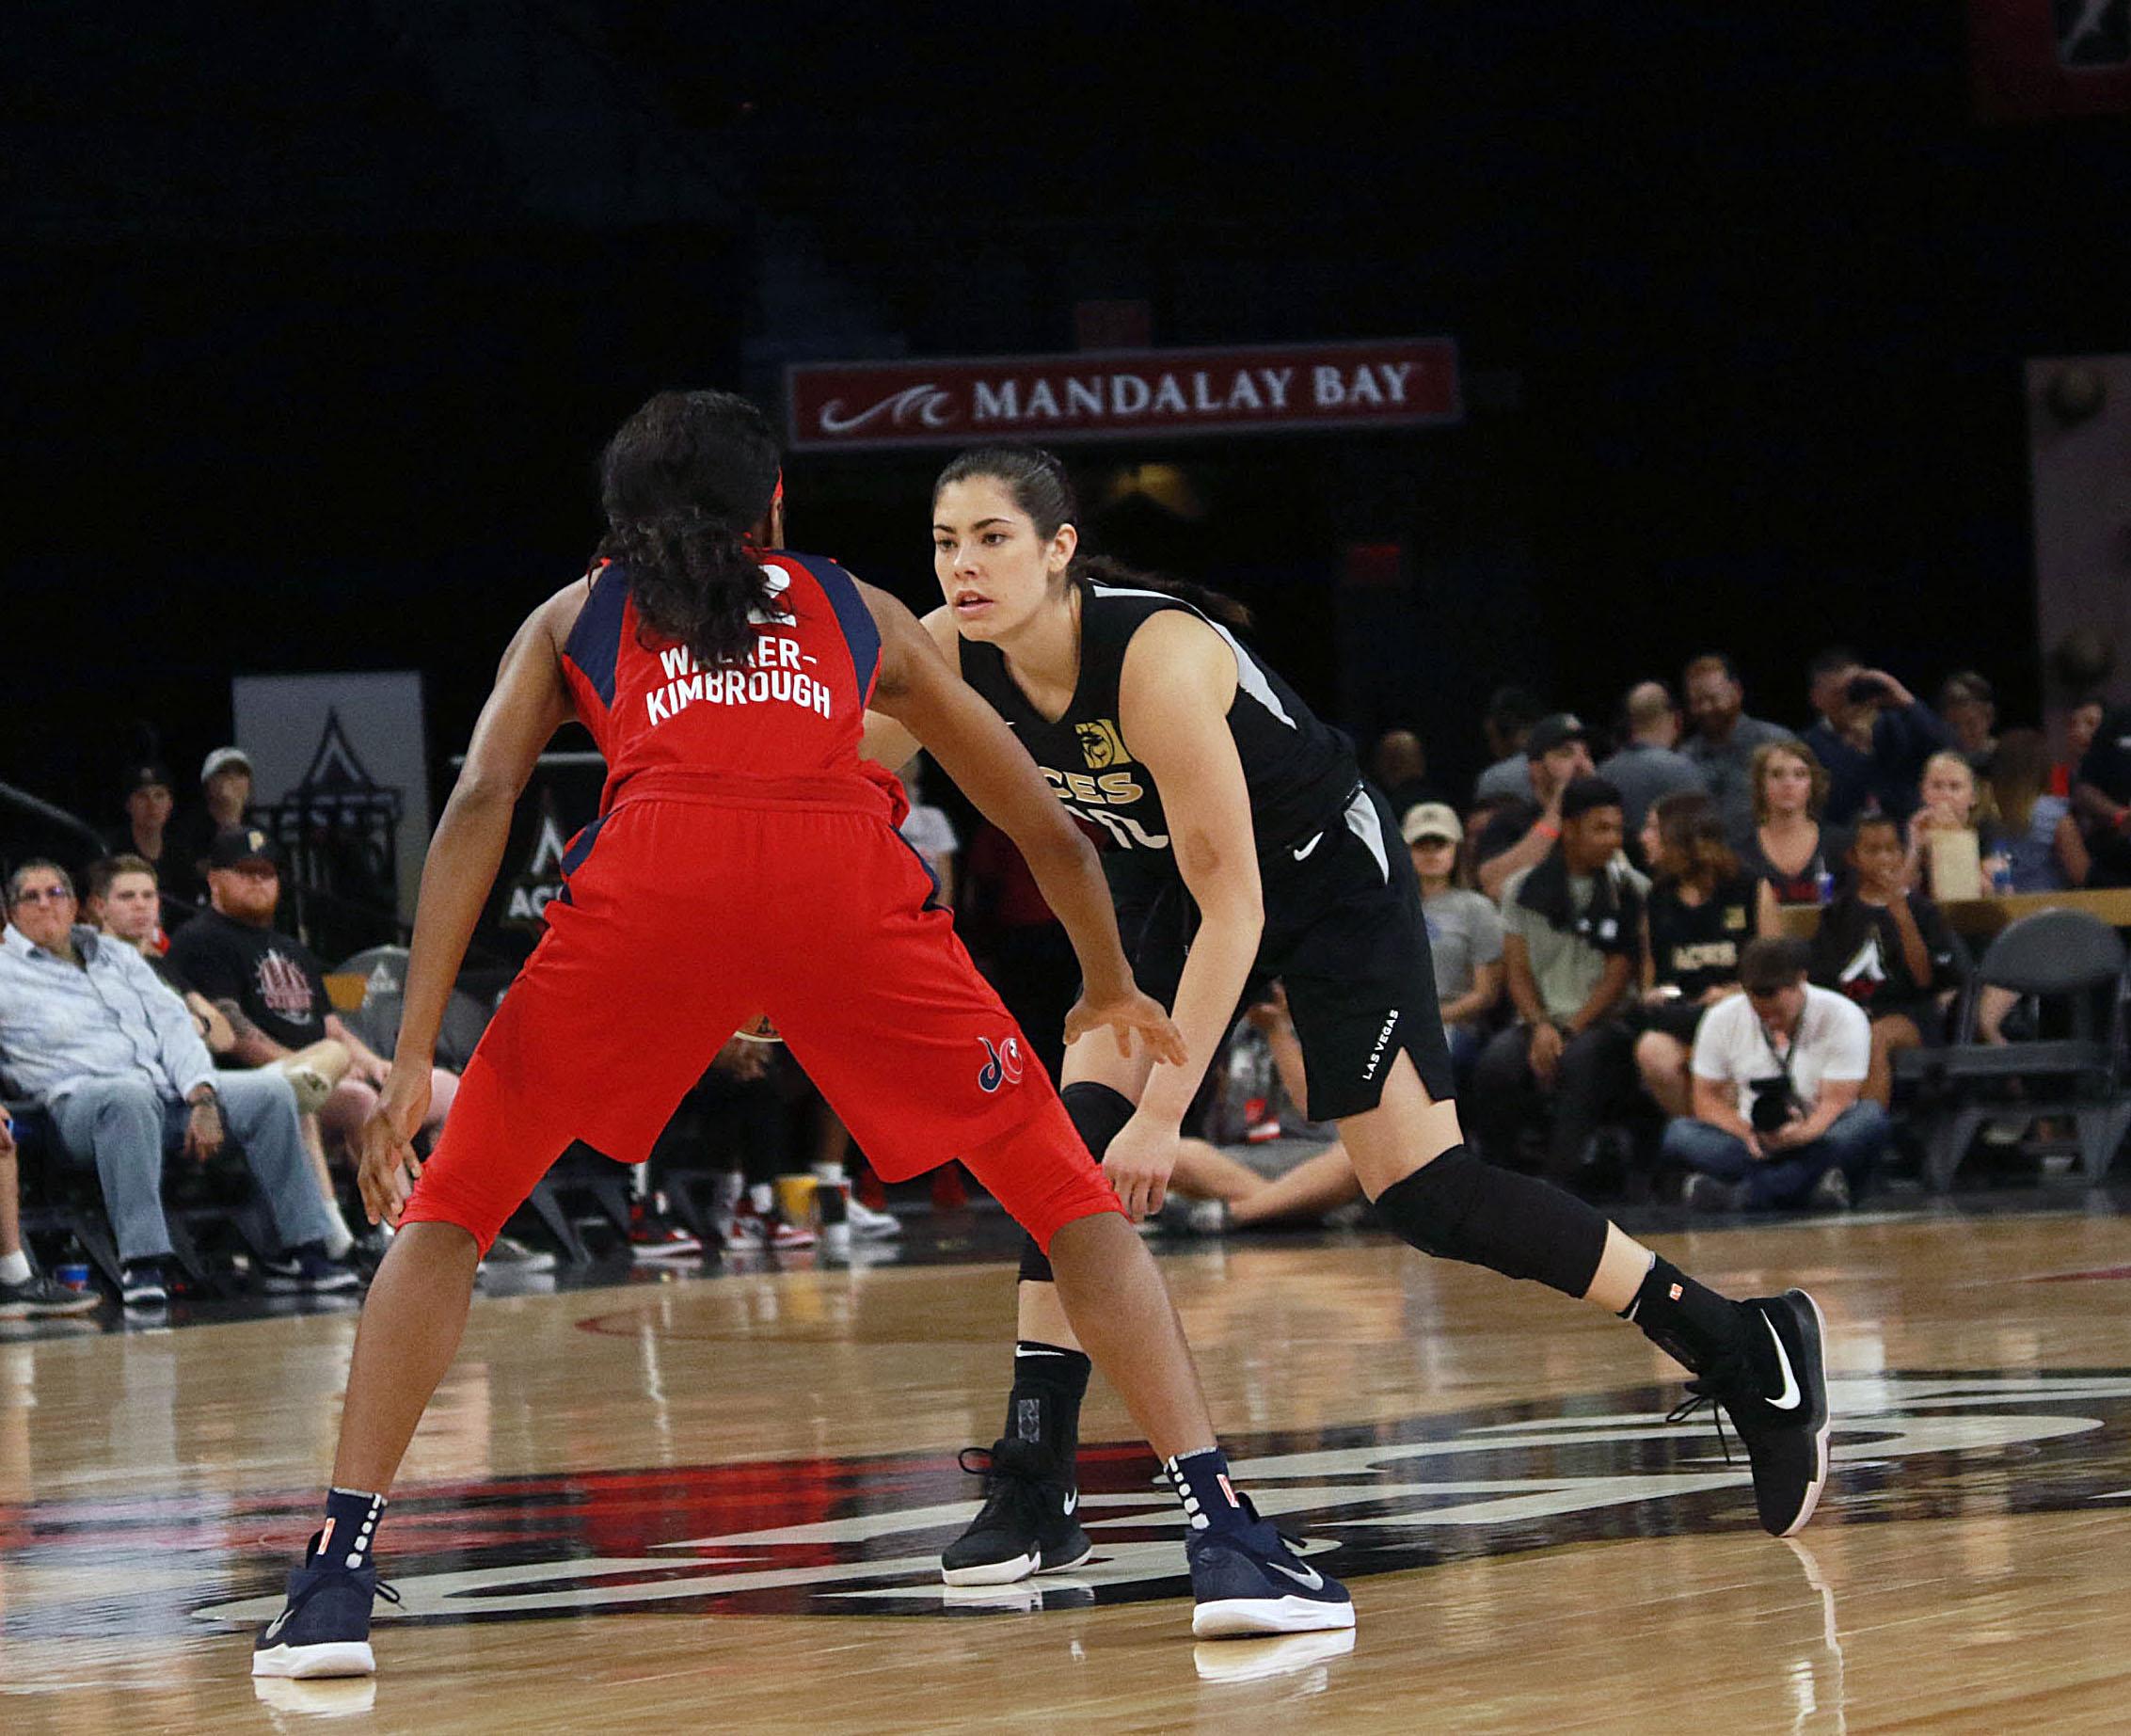 Duas mulheres jogam basquete.